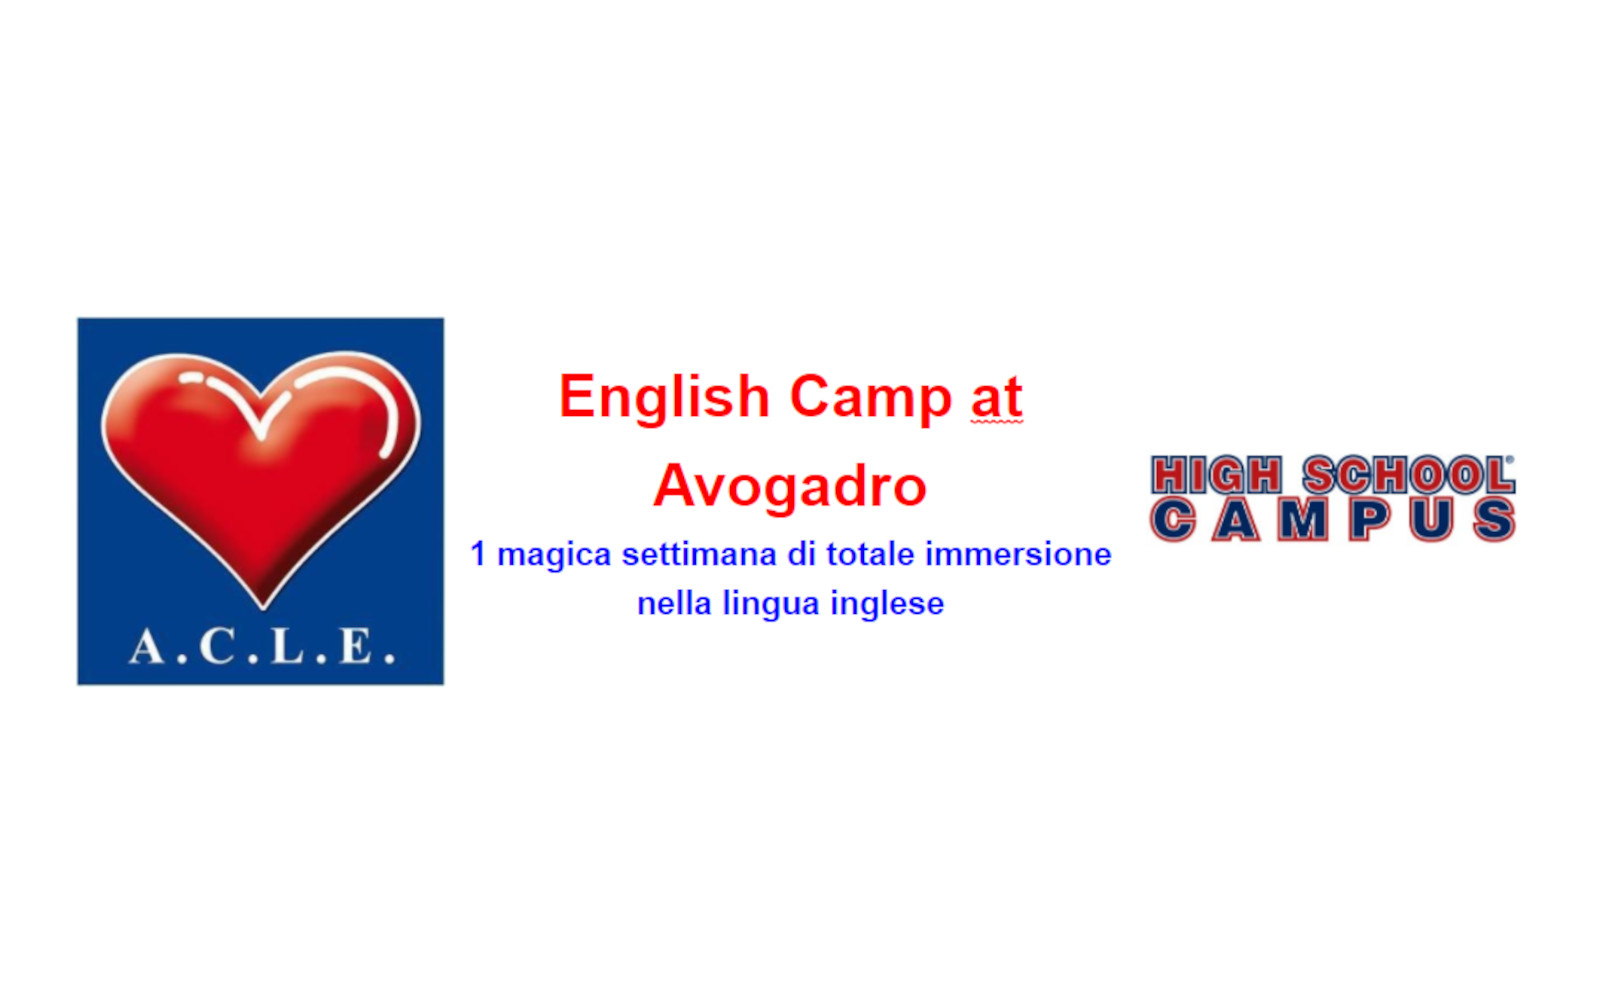 English Camp at Avogadro